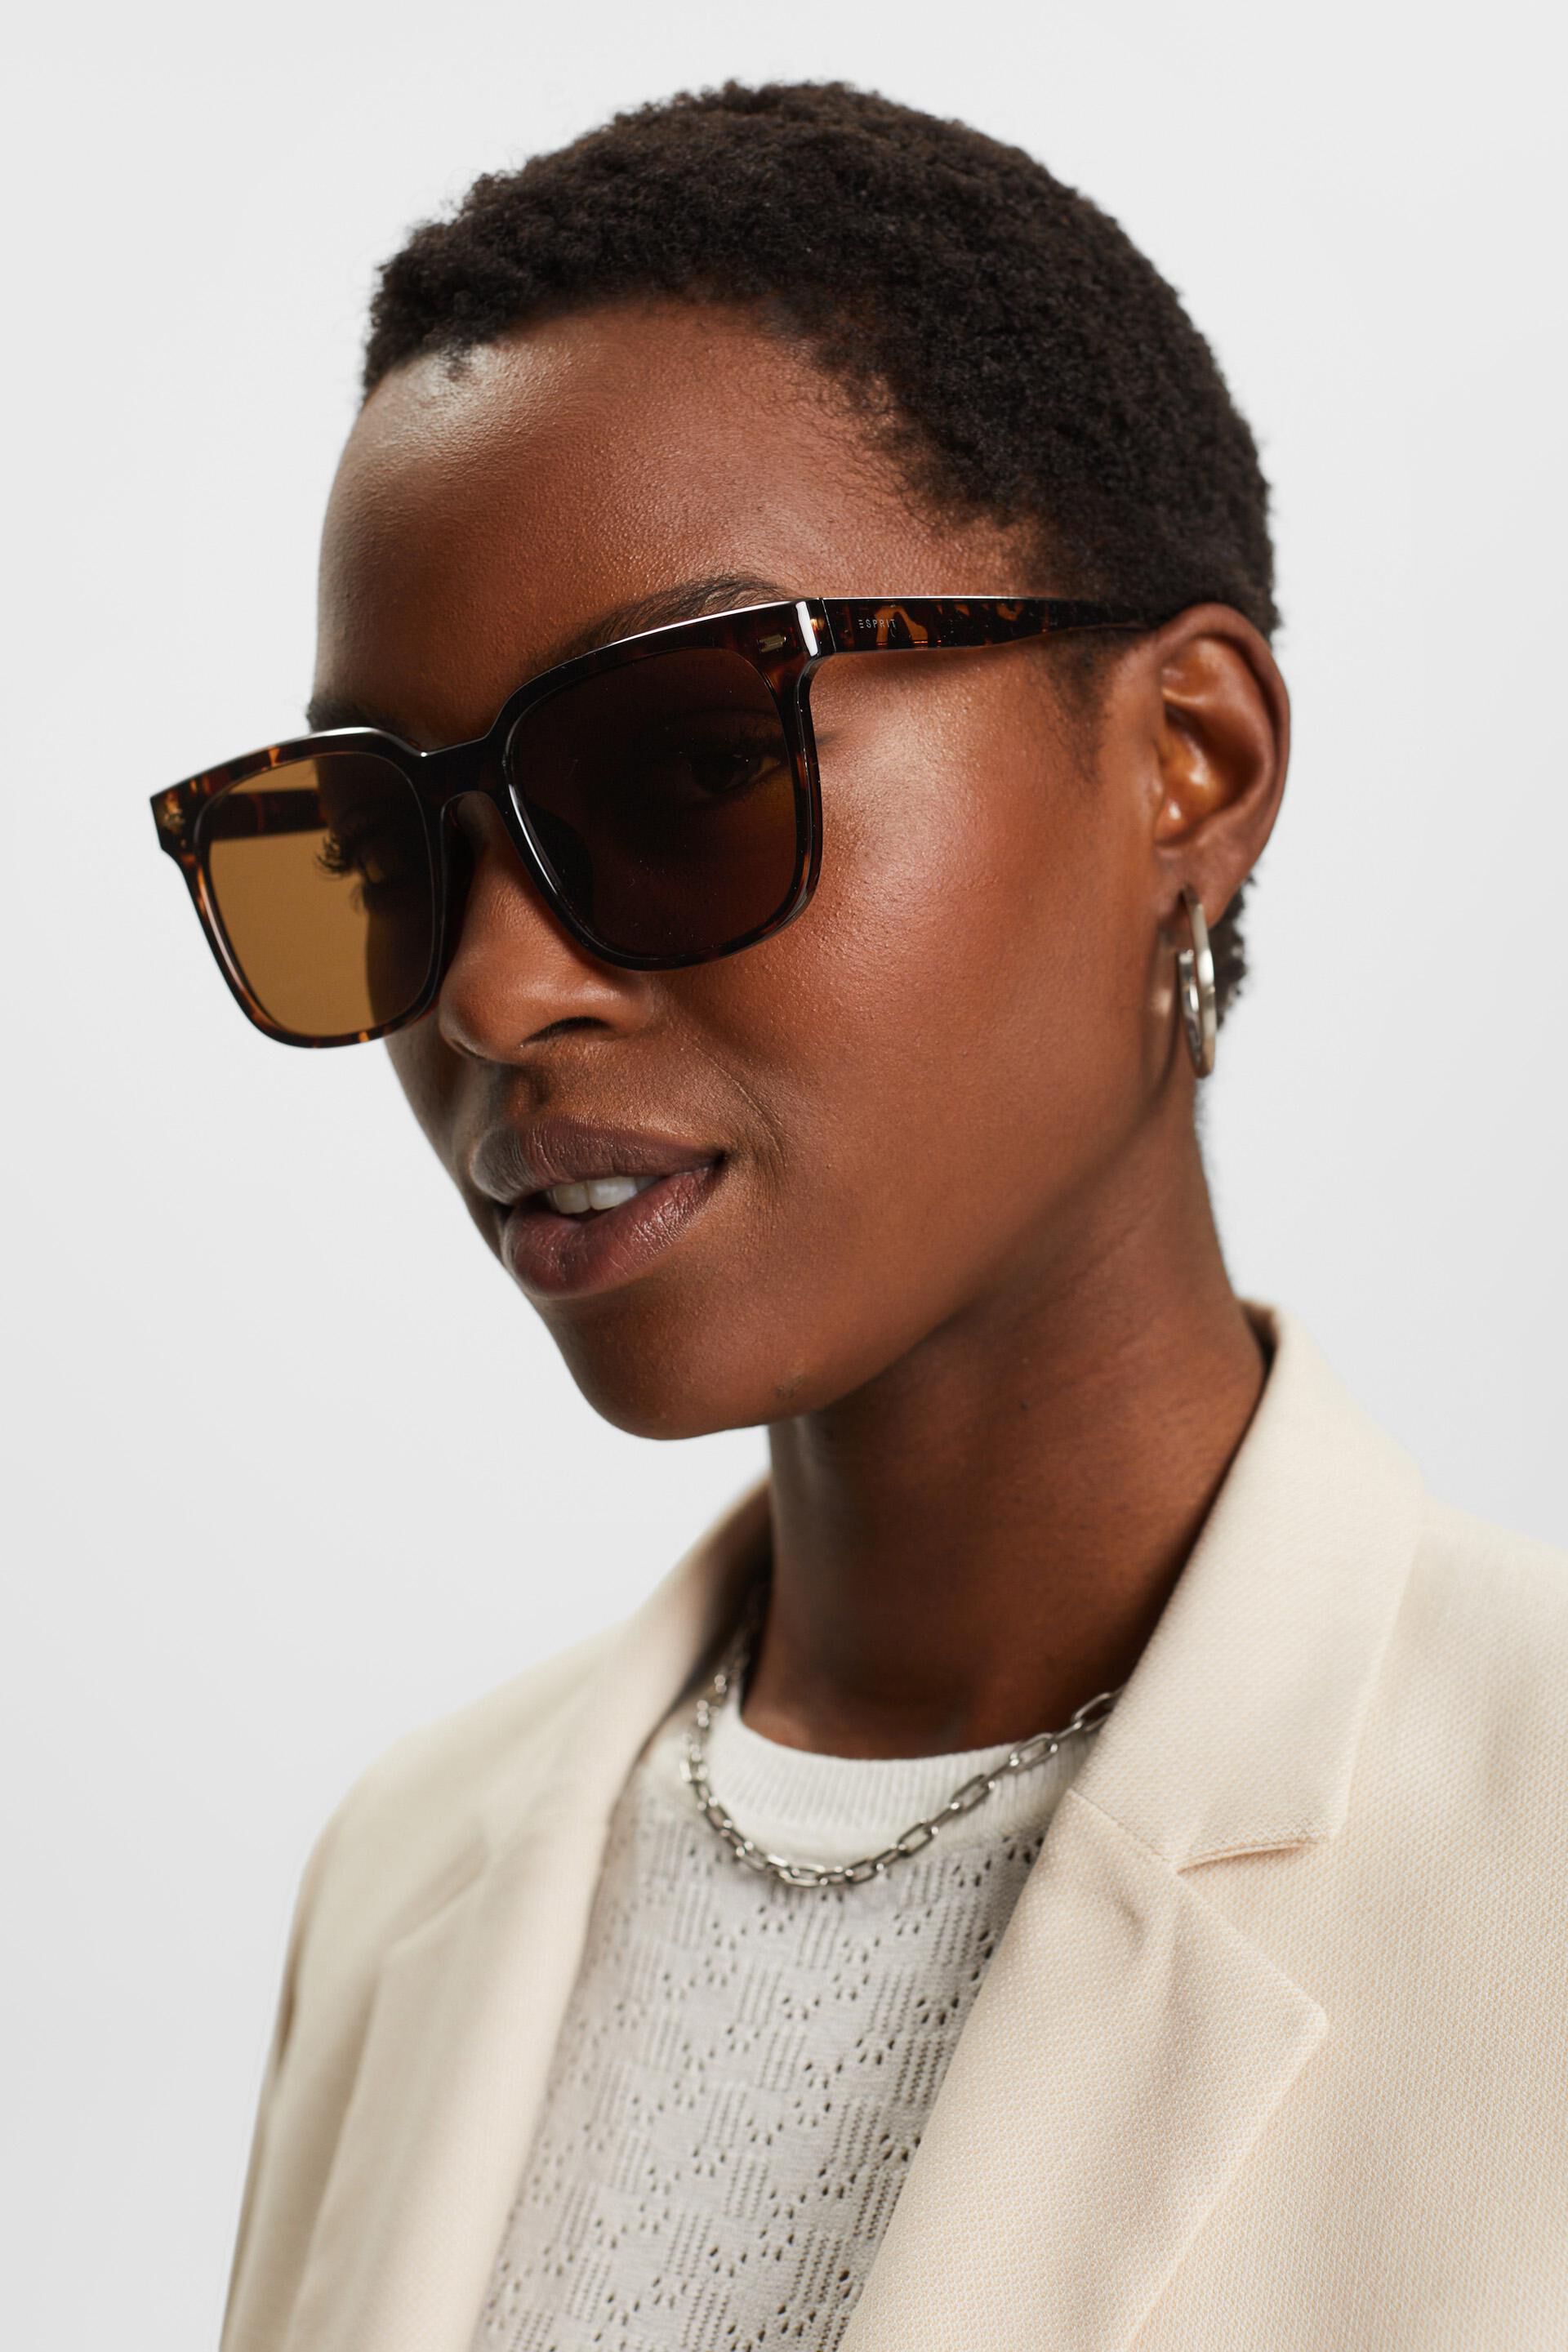 Esprit Online Store Leichte Acetat-Sonnenbrille